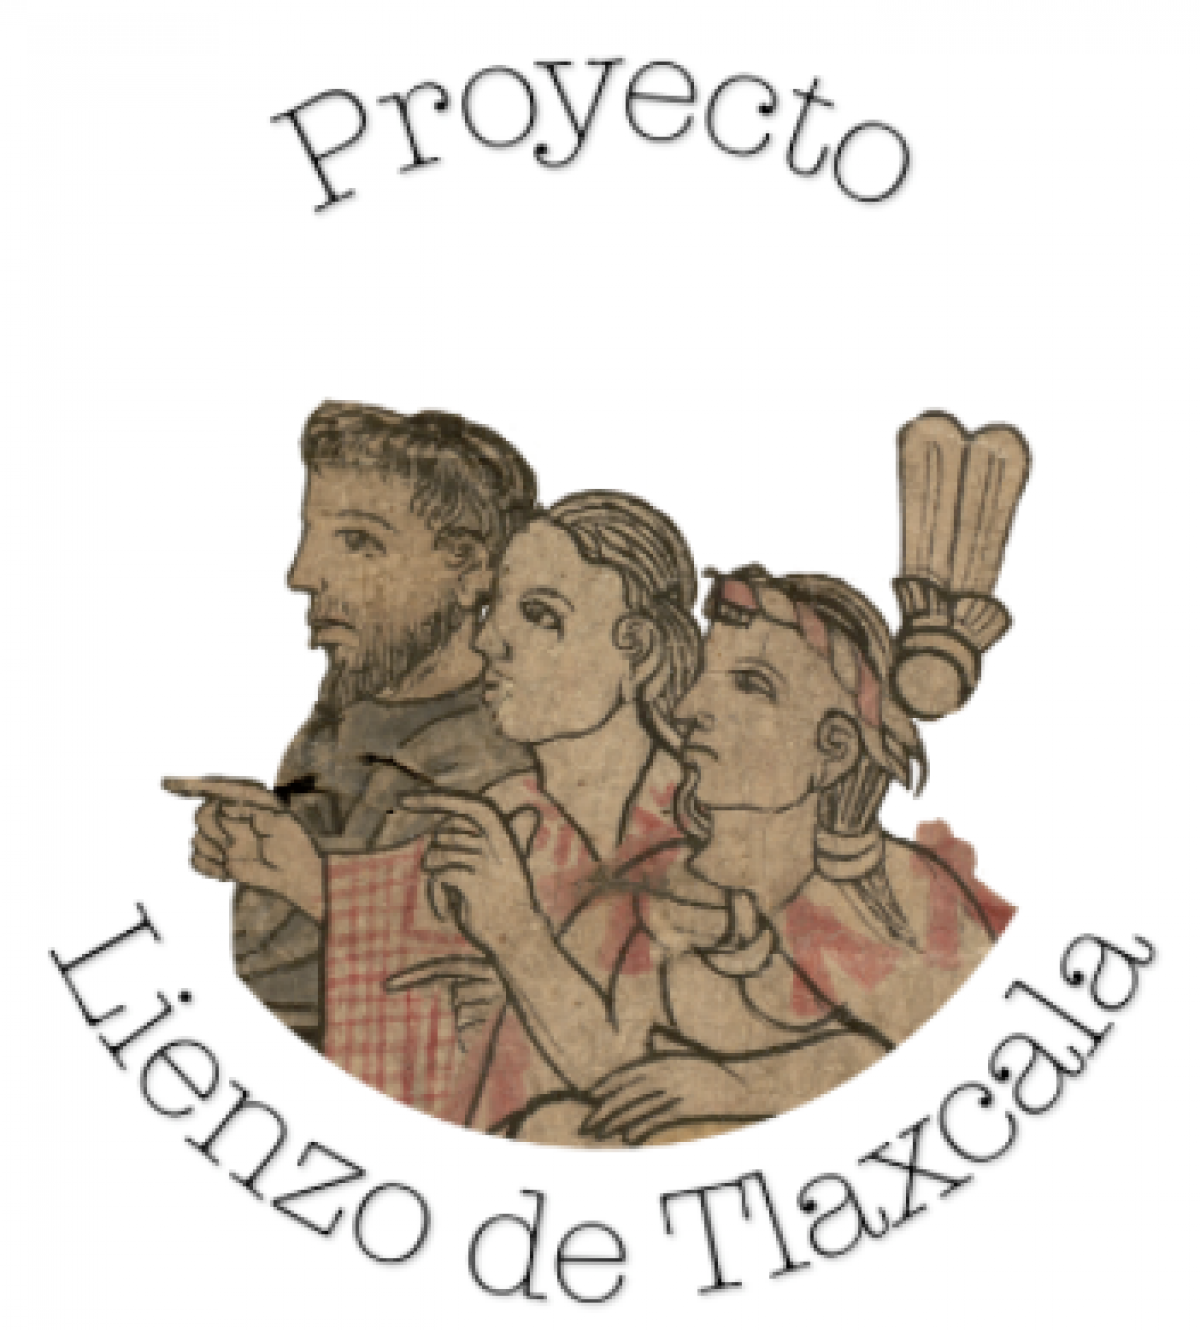 seminario-del-lienzo-de-tlaxcala-reconstruccion-historica-digital-del-lienzo-de-tlaxcala-2021-portada.png